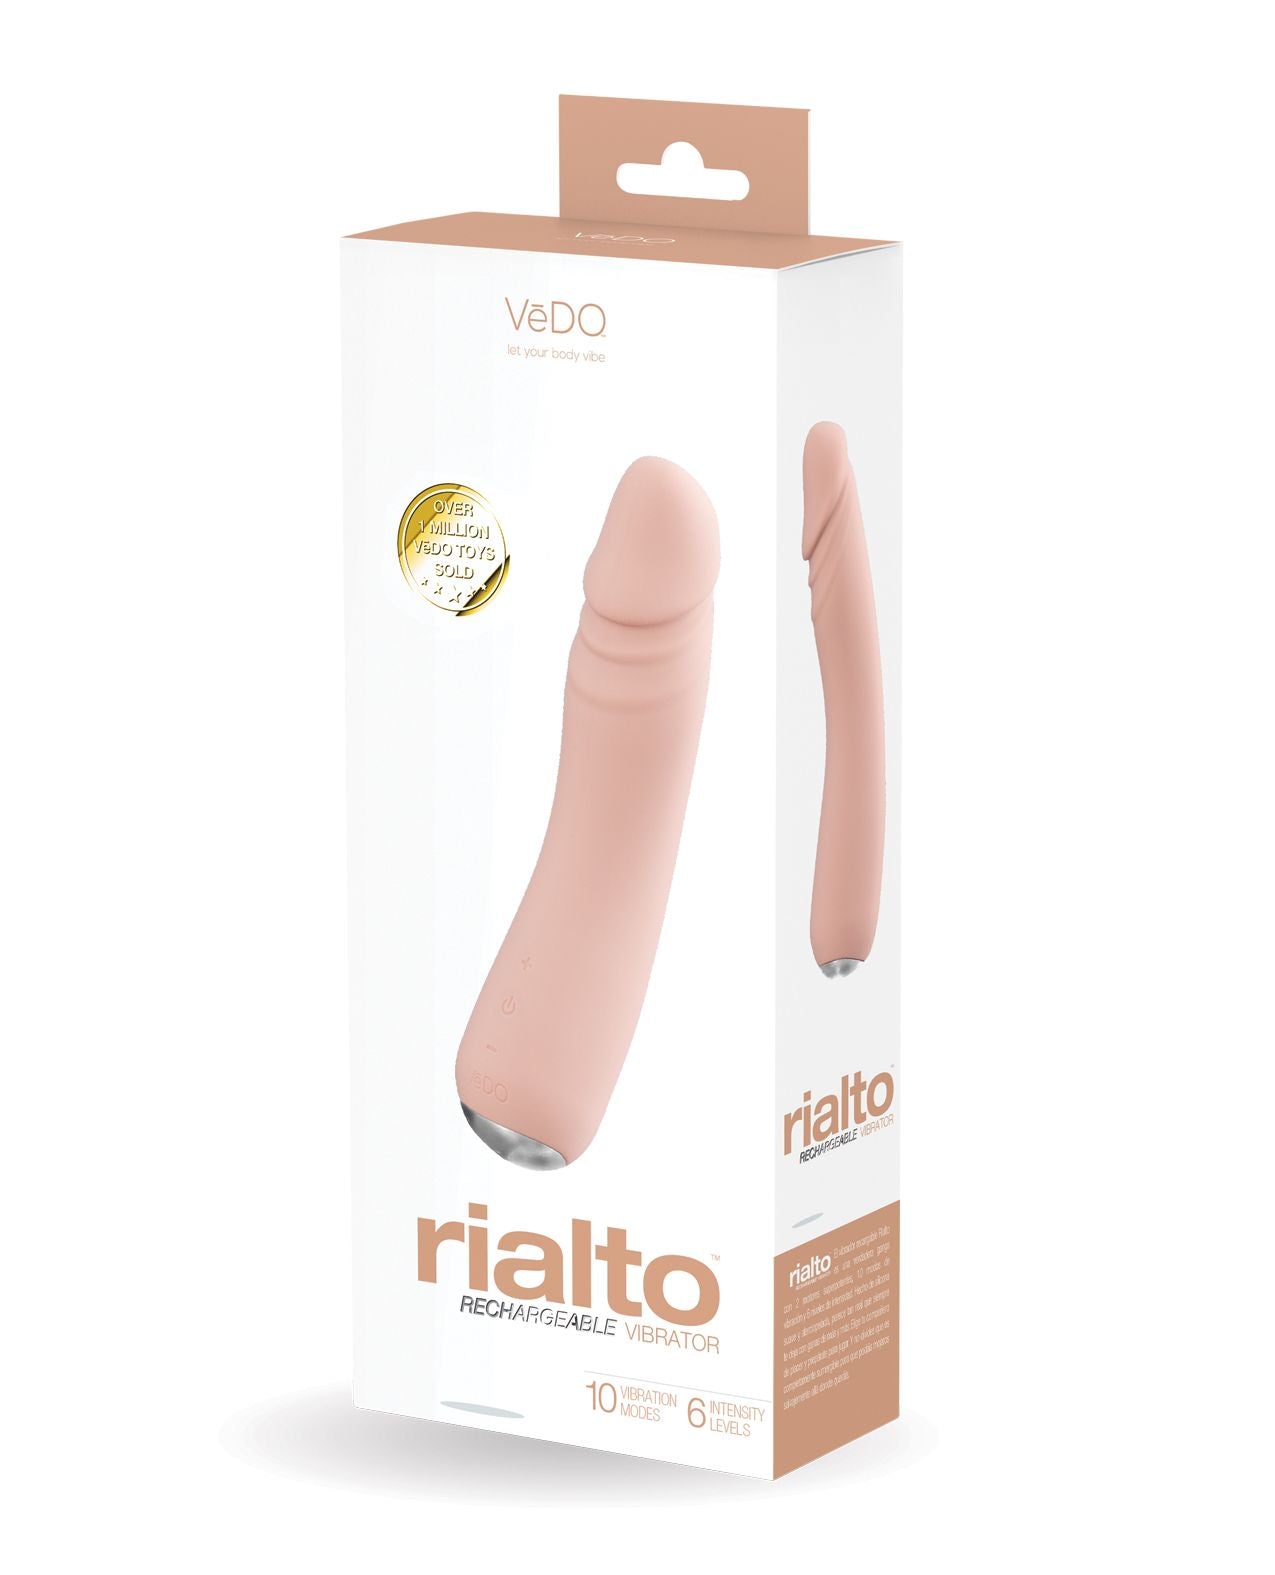 VeDO Rialto Realistic Vibrator in its box (vanilla).